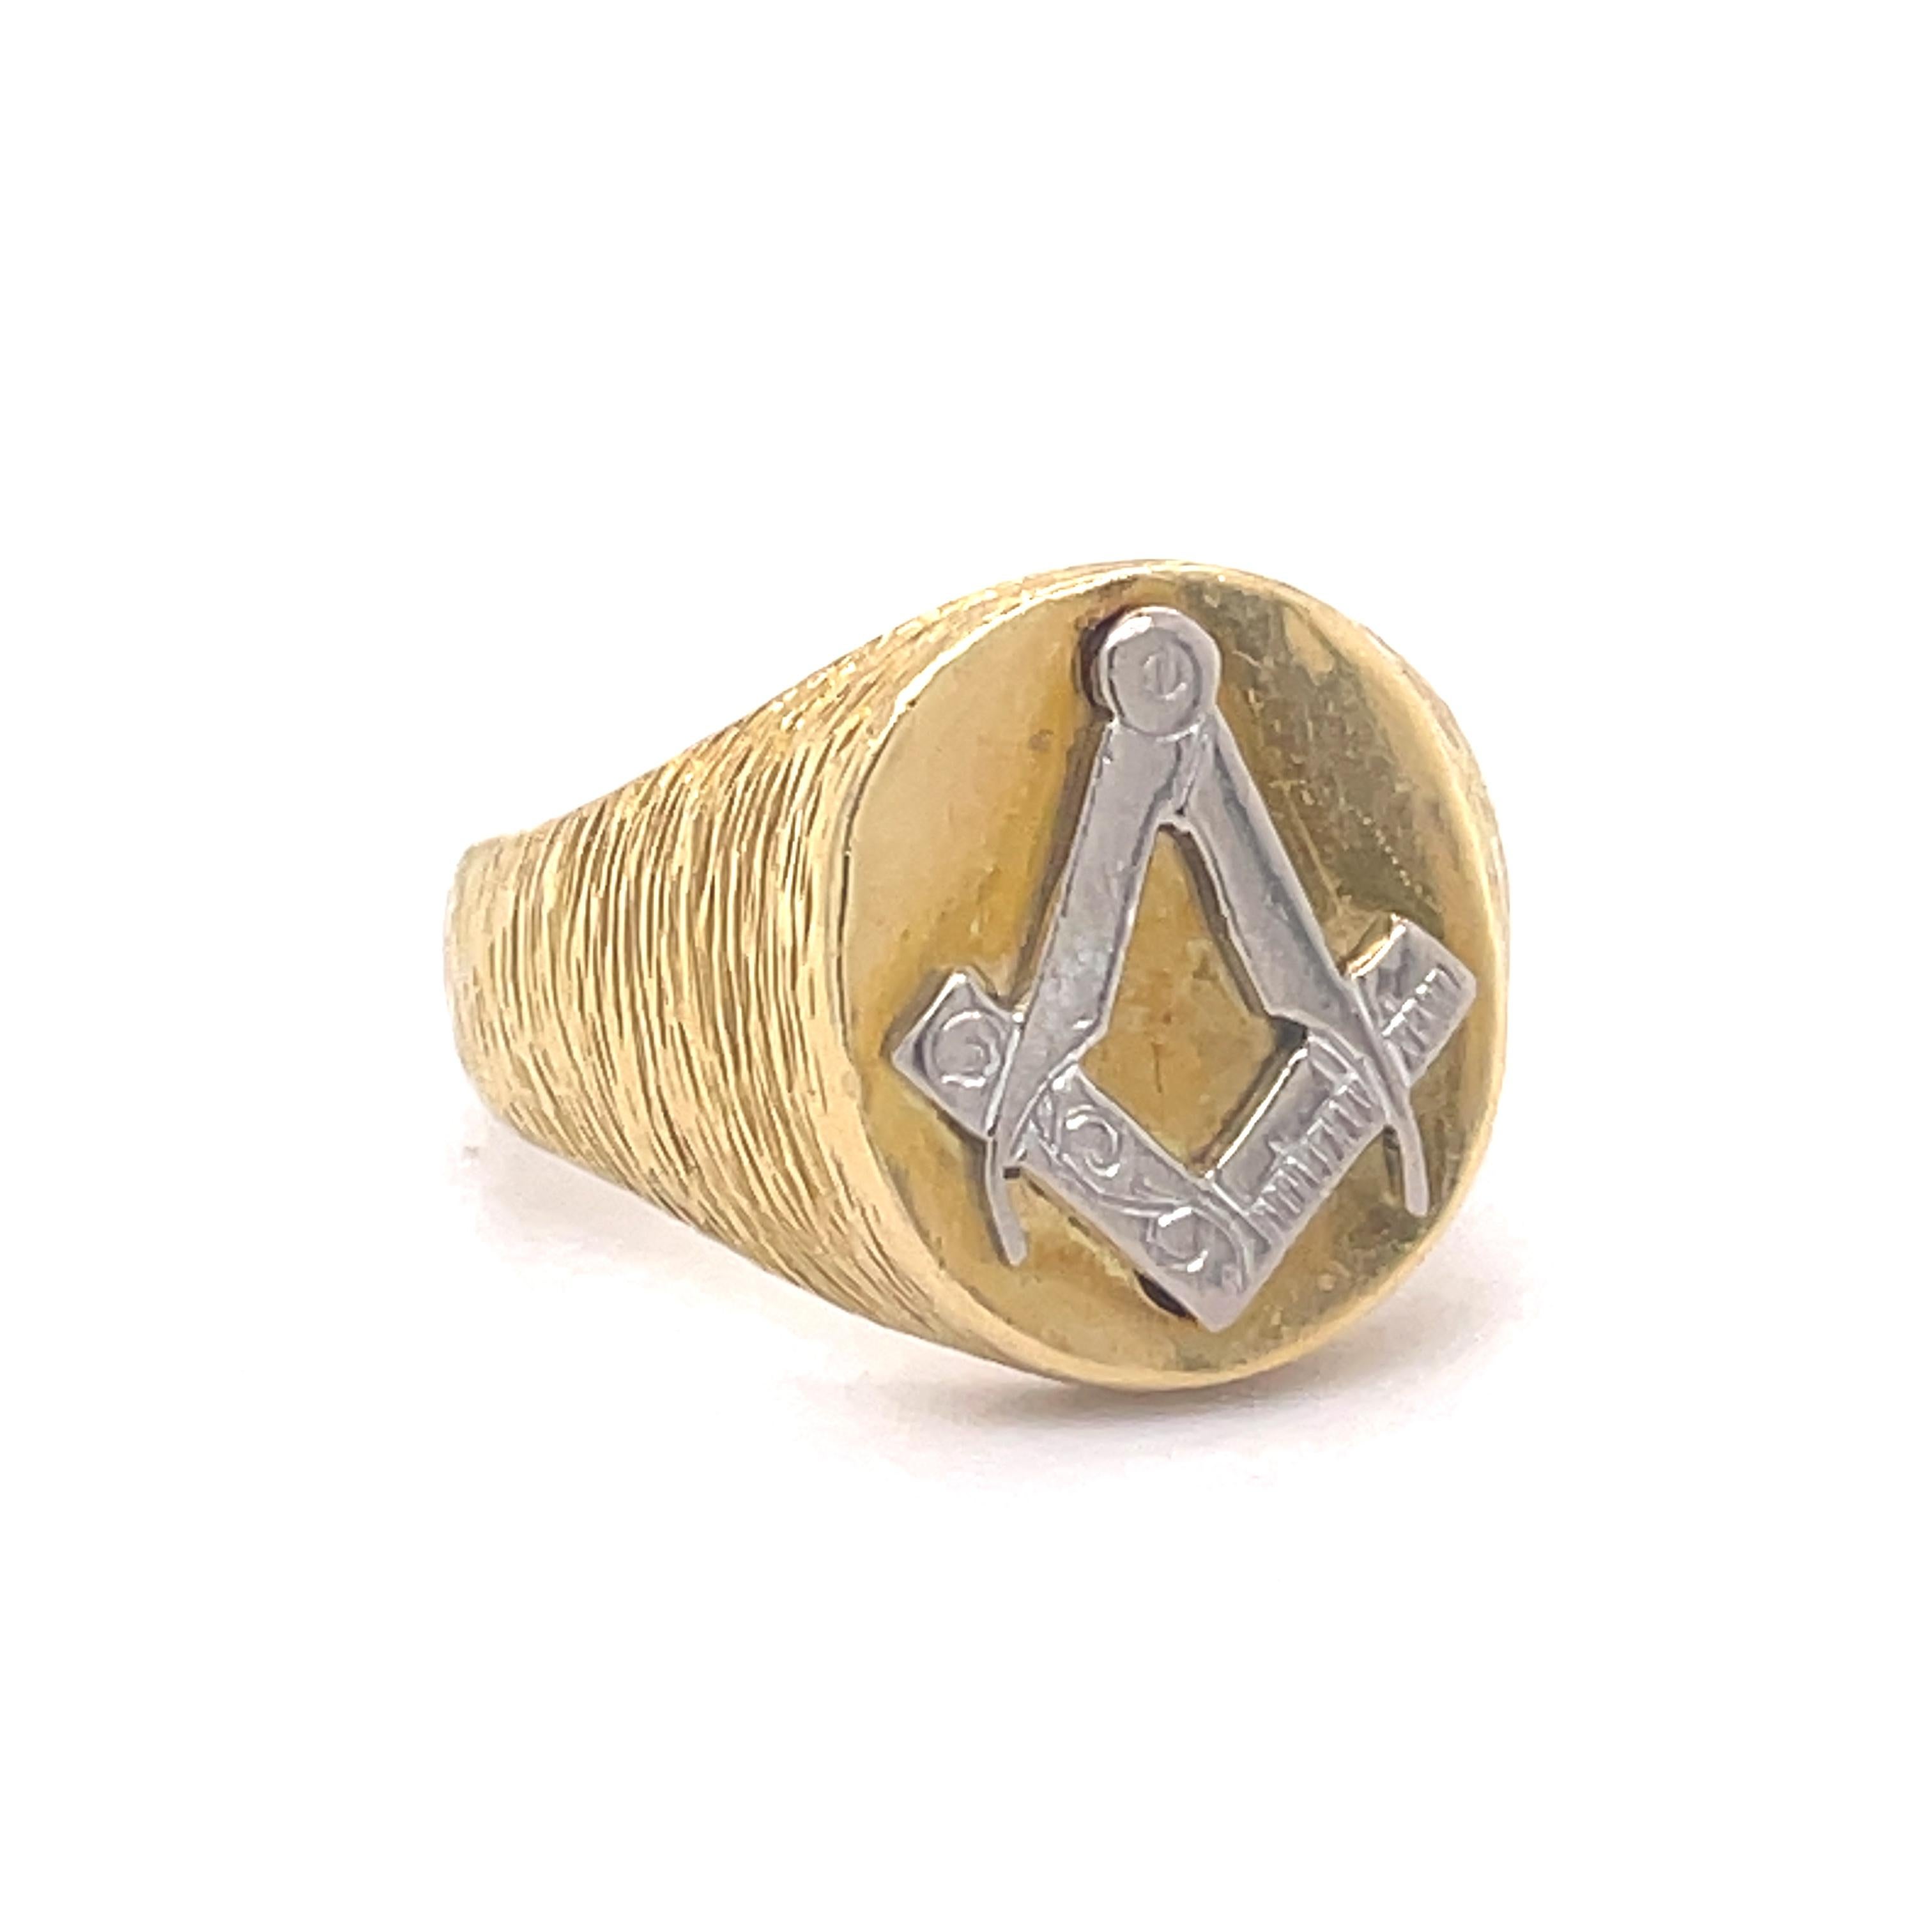 Free Masons Pinky ring - Kutchinsky jewelry, 18K yellow gold, freemasons symbol For Sale 1